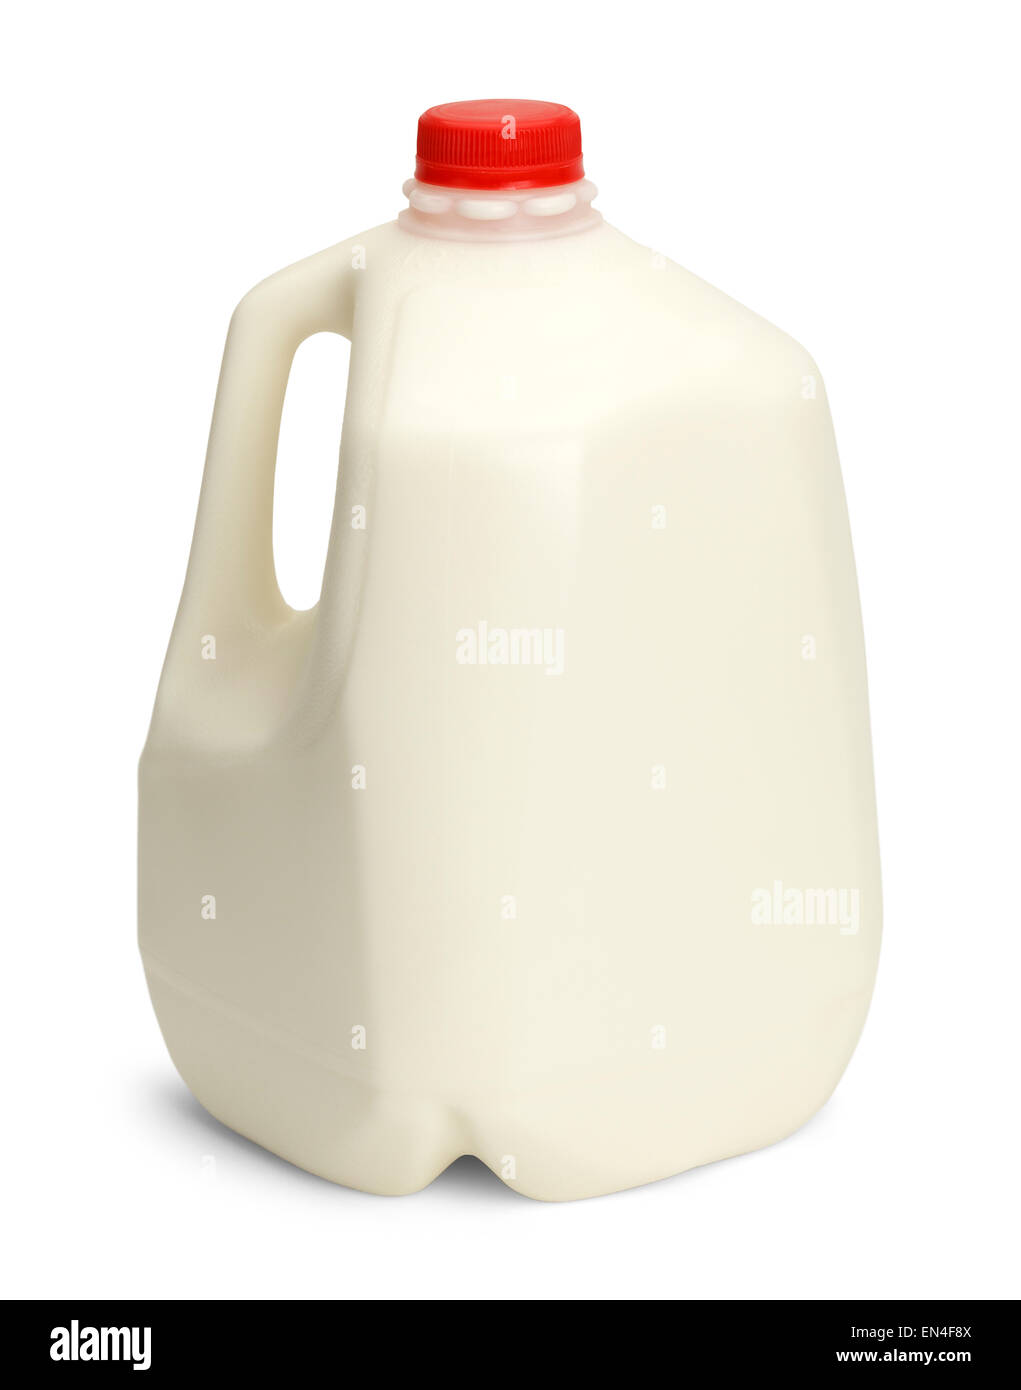 Gallone di latte intero con rosso cappuccio in plastica isolato su sfondo bianco. Foto Stock